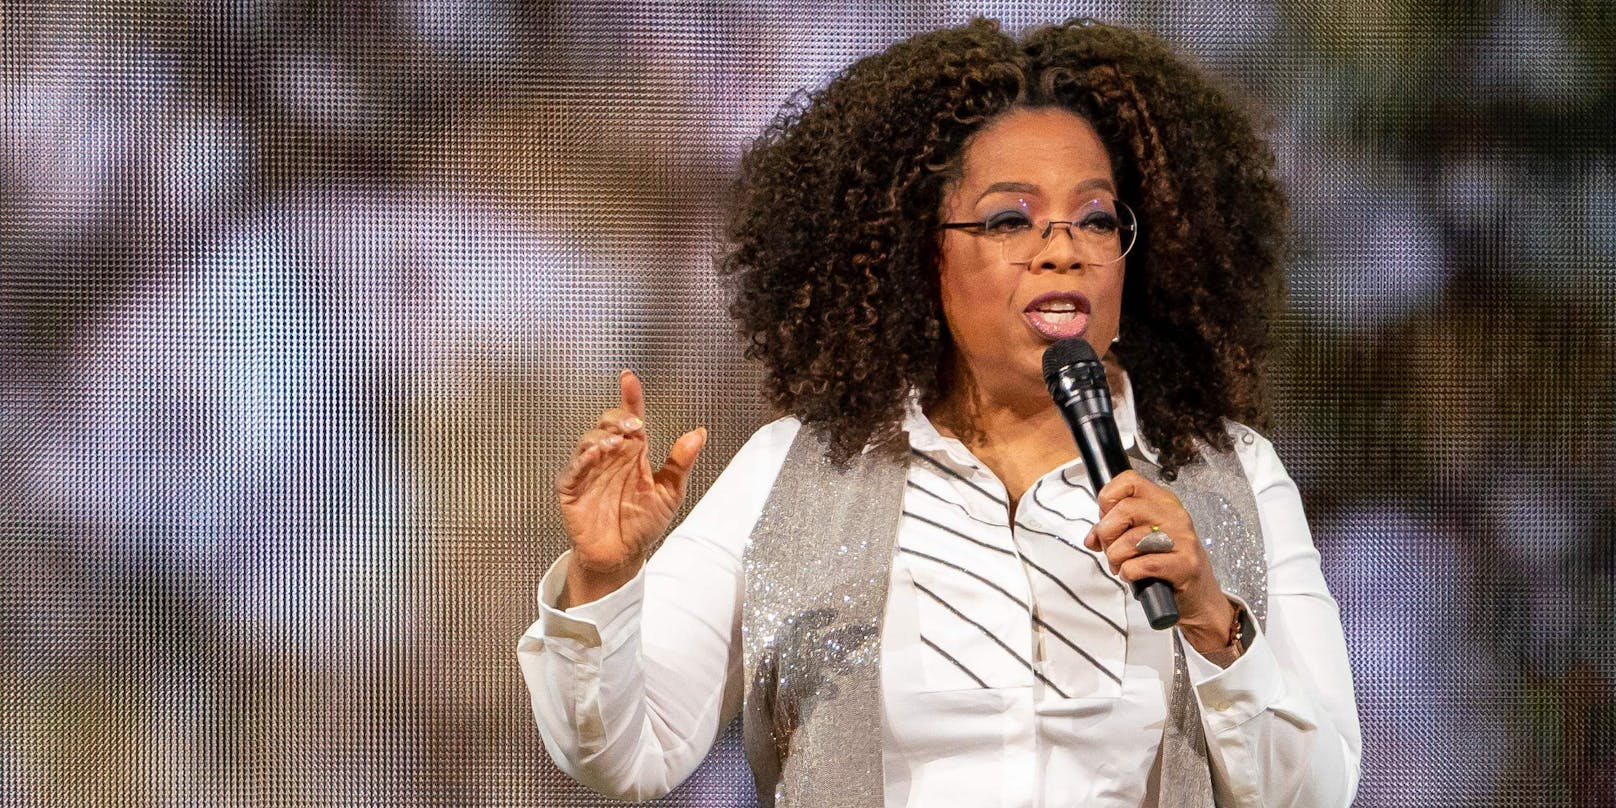 Oprah Winfrey (67) ist eine weltbekannte Talkshow-Moderatorin und Milliardärin